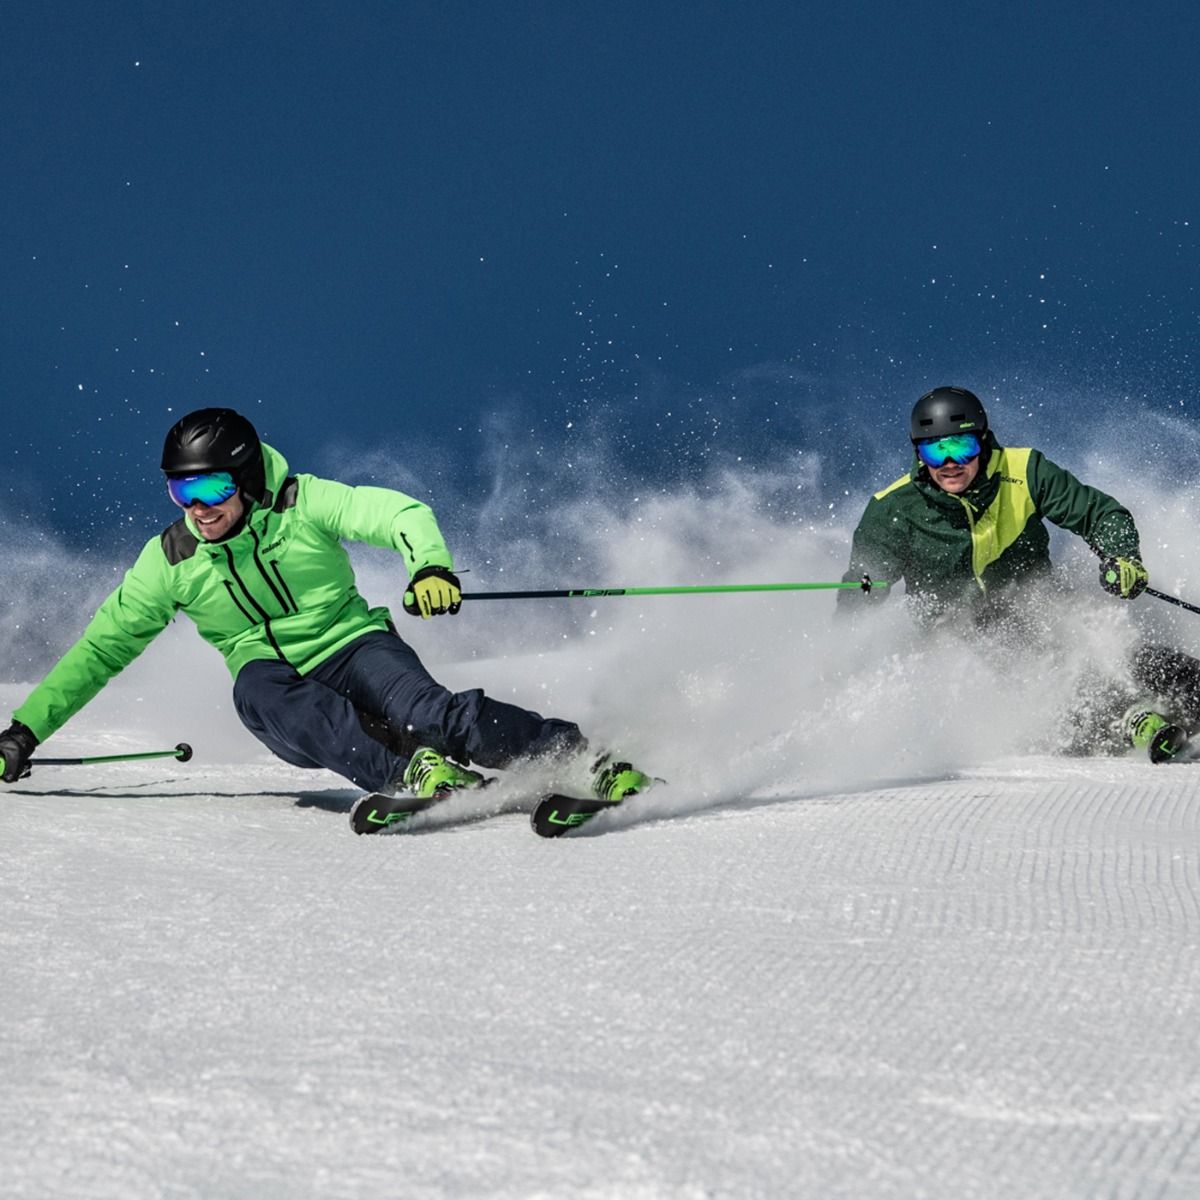 Горные лыжи с креплениями ELAN 2019-20 Amphibio 14Ti FusionX + EMX 11 FusionX